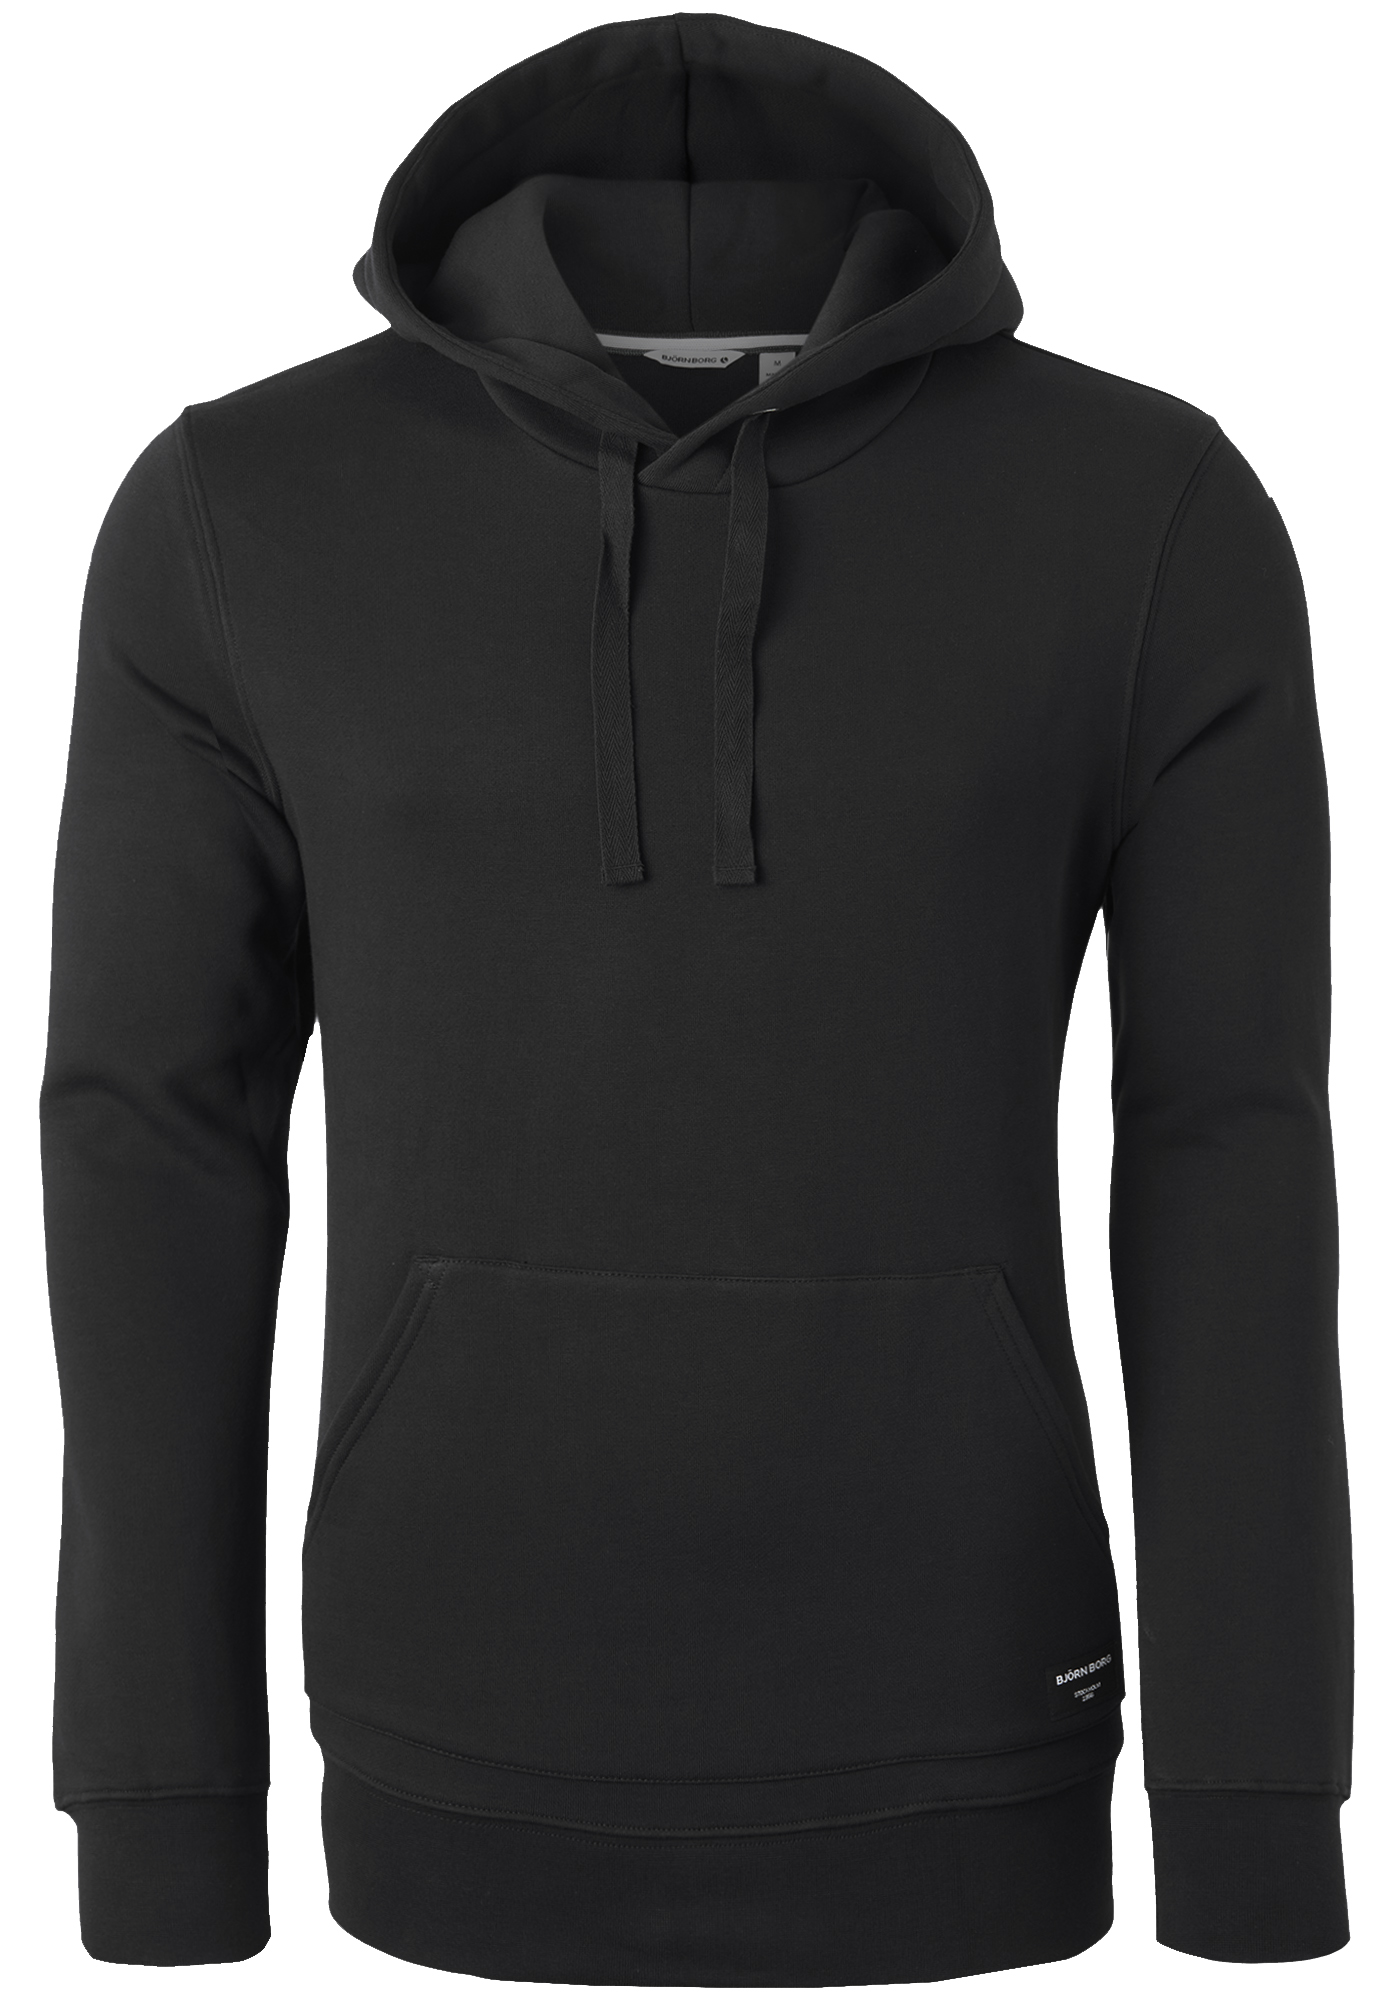 Herinnering Consumeren Spijsverteringsorgaan Bjorn Borg hoodie sweatshirt, heren trui met capuchon dik, zwart - Shop de  nieuwste voorjaarsmode